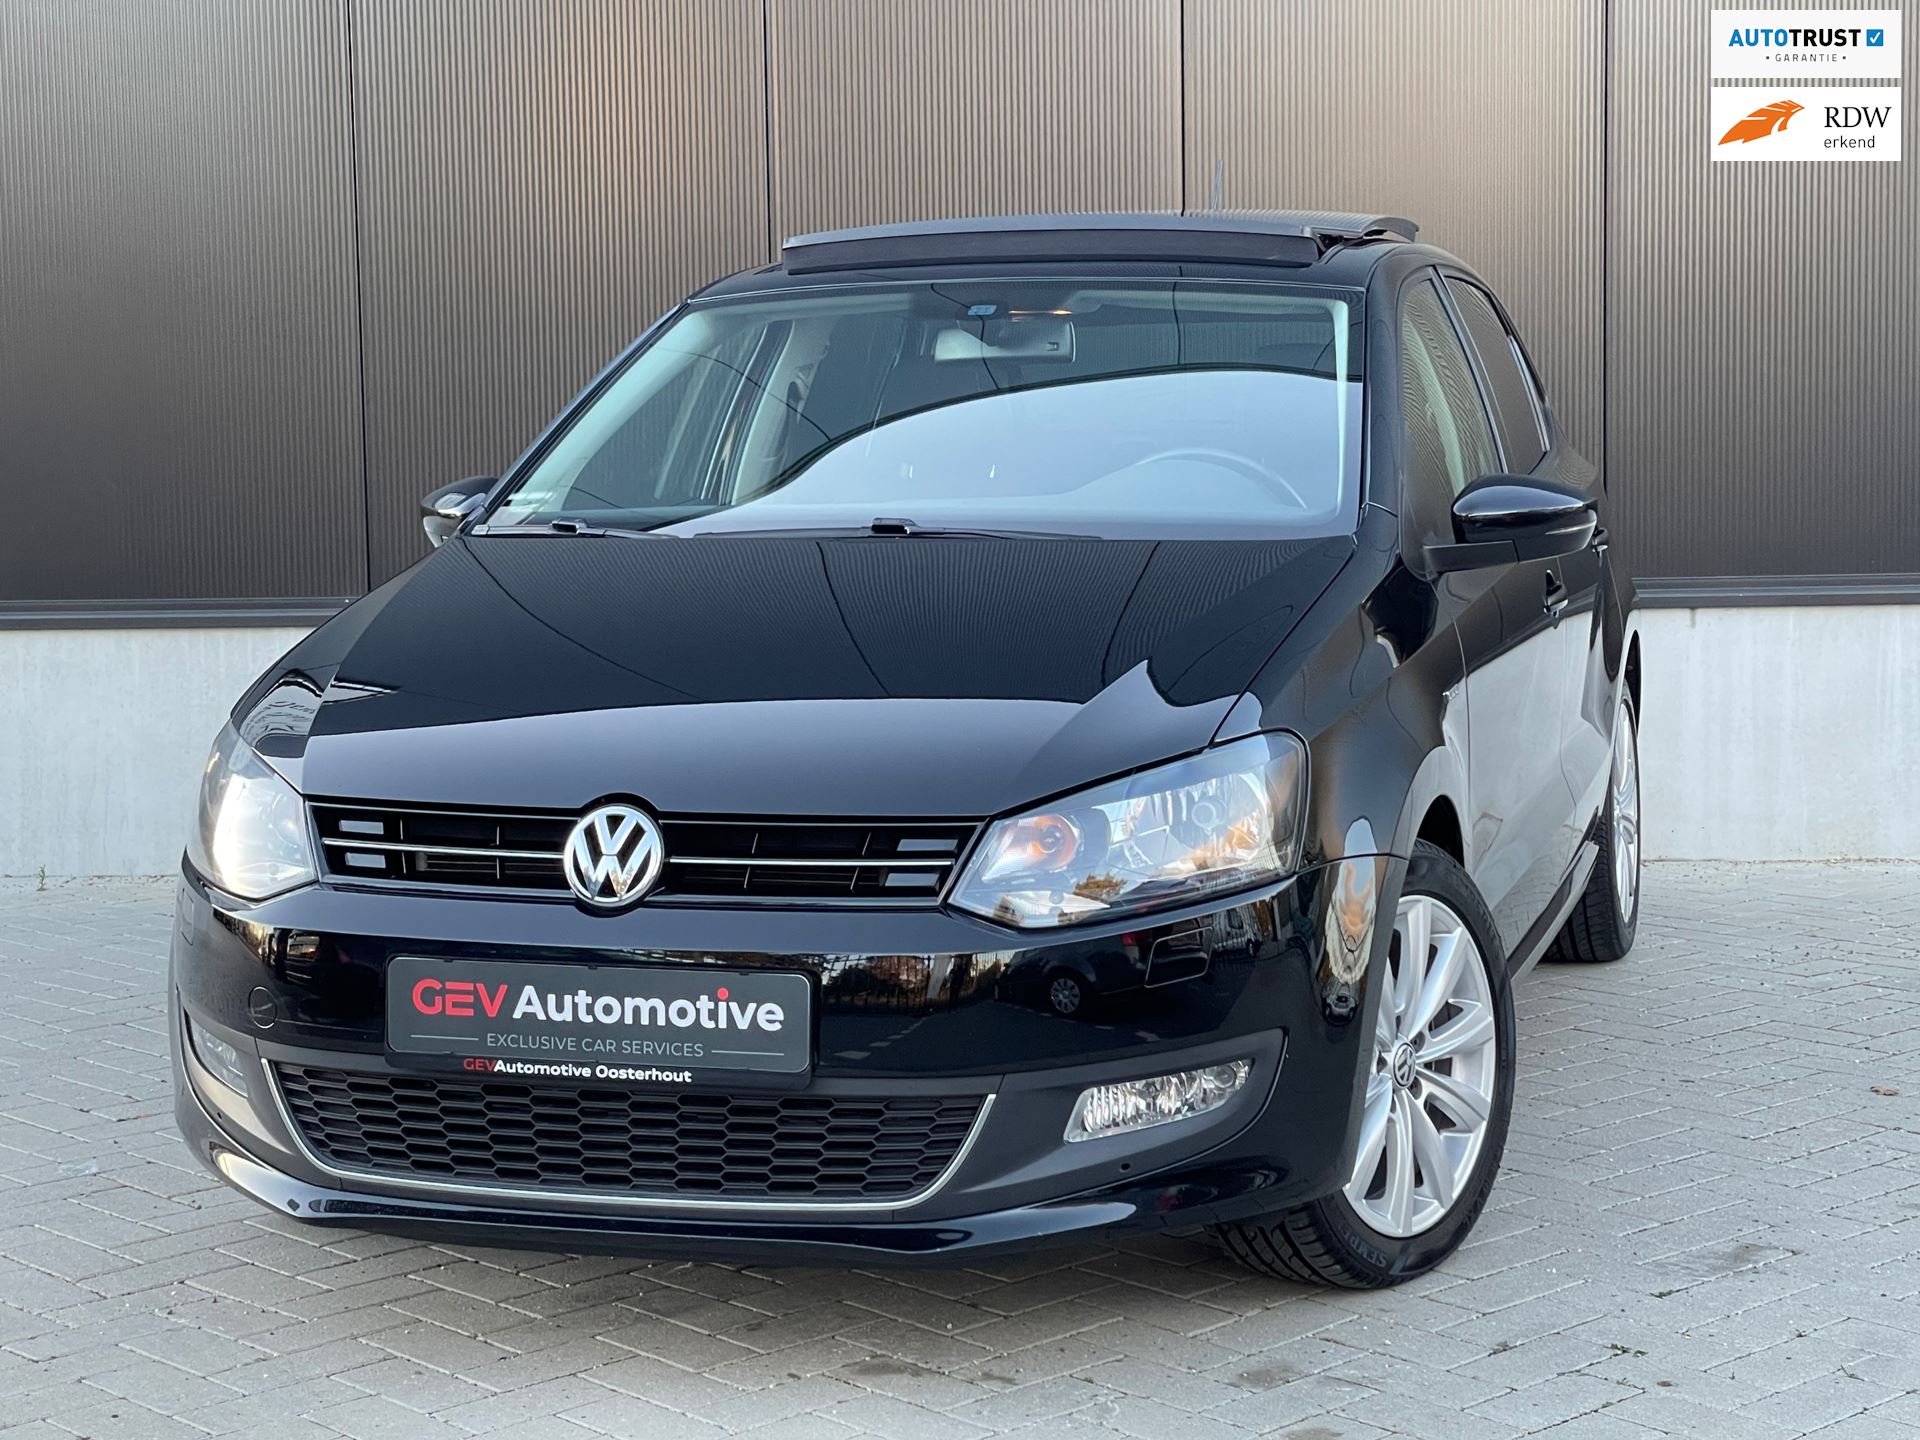 Volkswagen Polo occasion - GEV Automotive